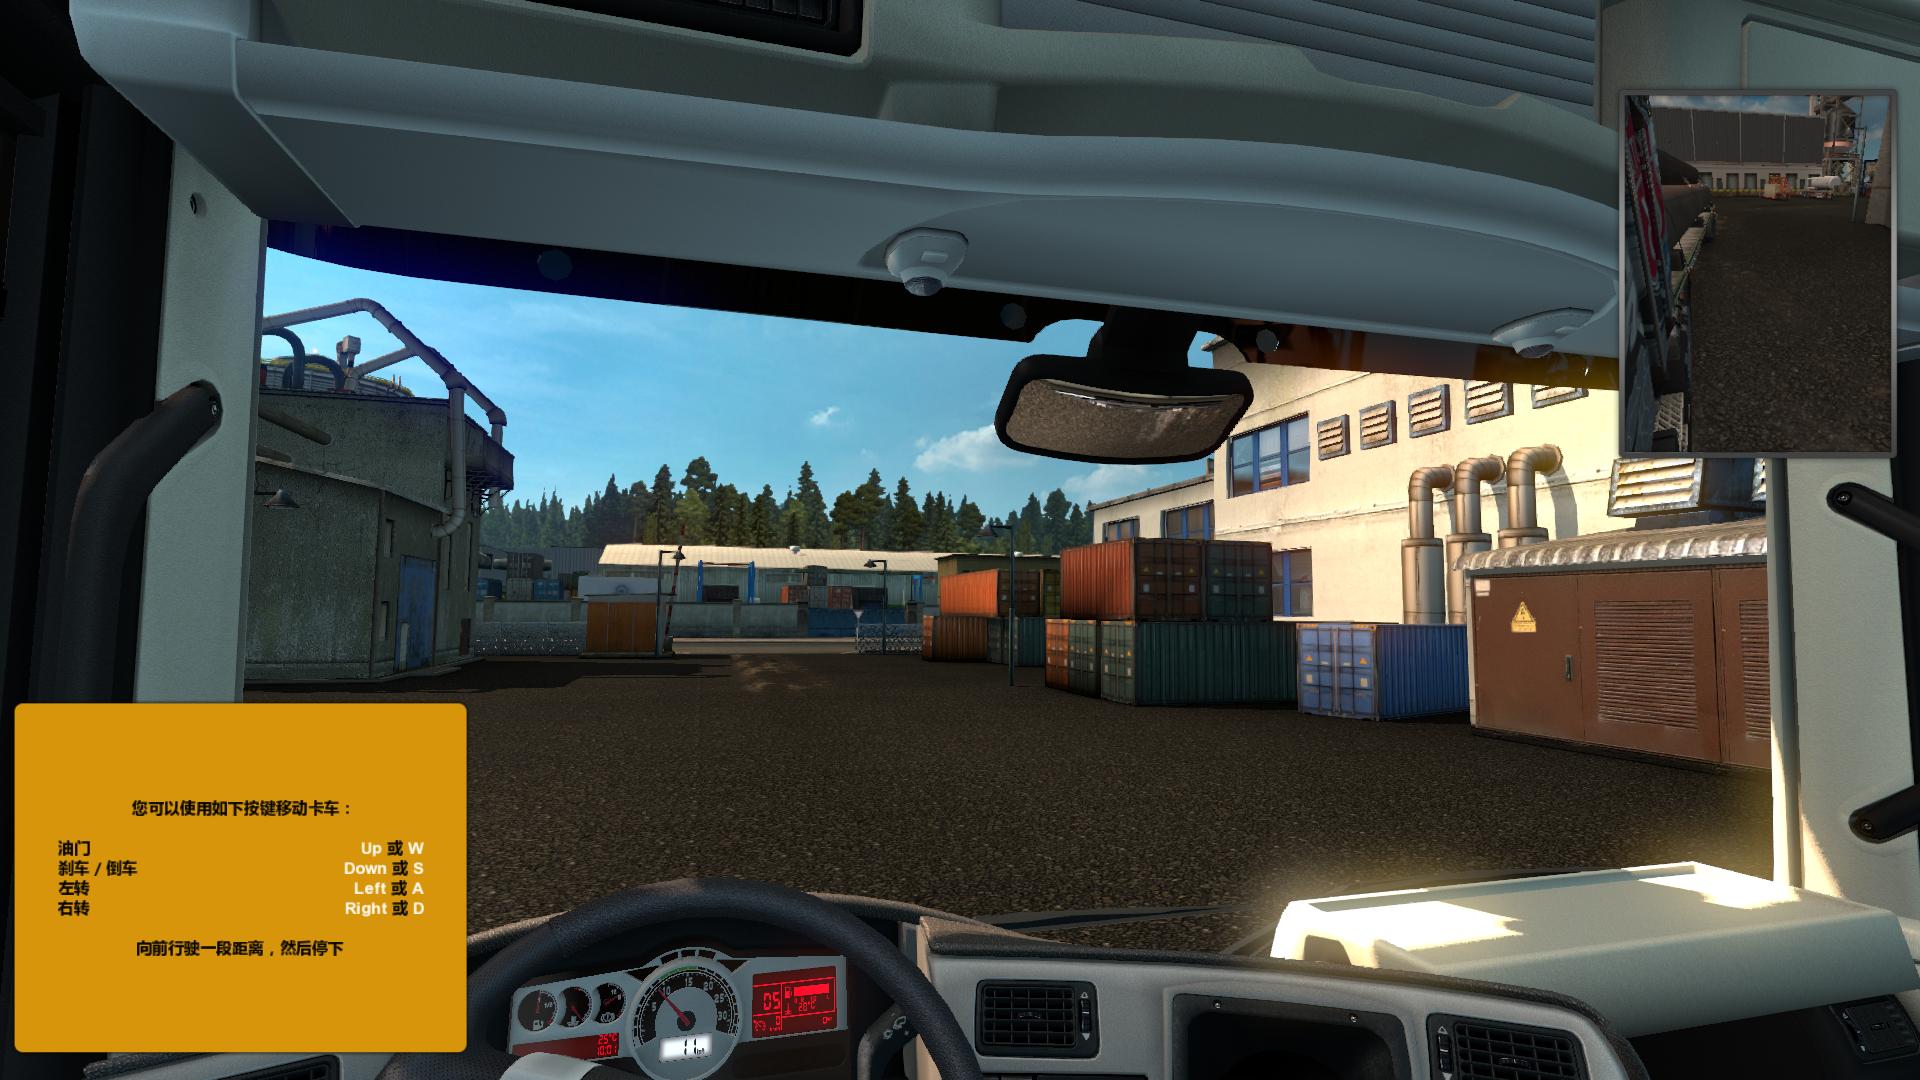 欧洲卡车模拟2(Euro Truck Simulator 2)截图